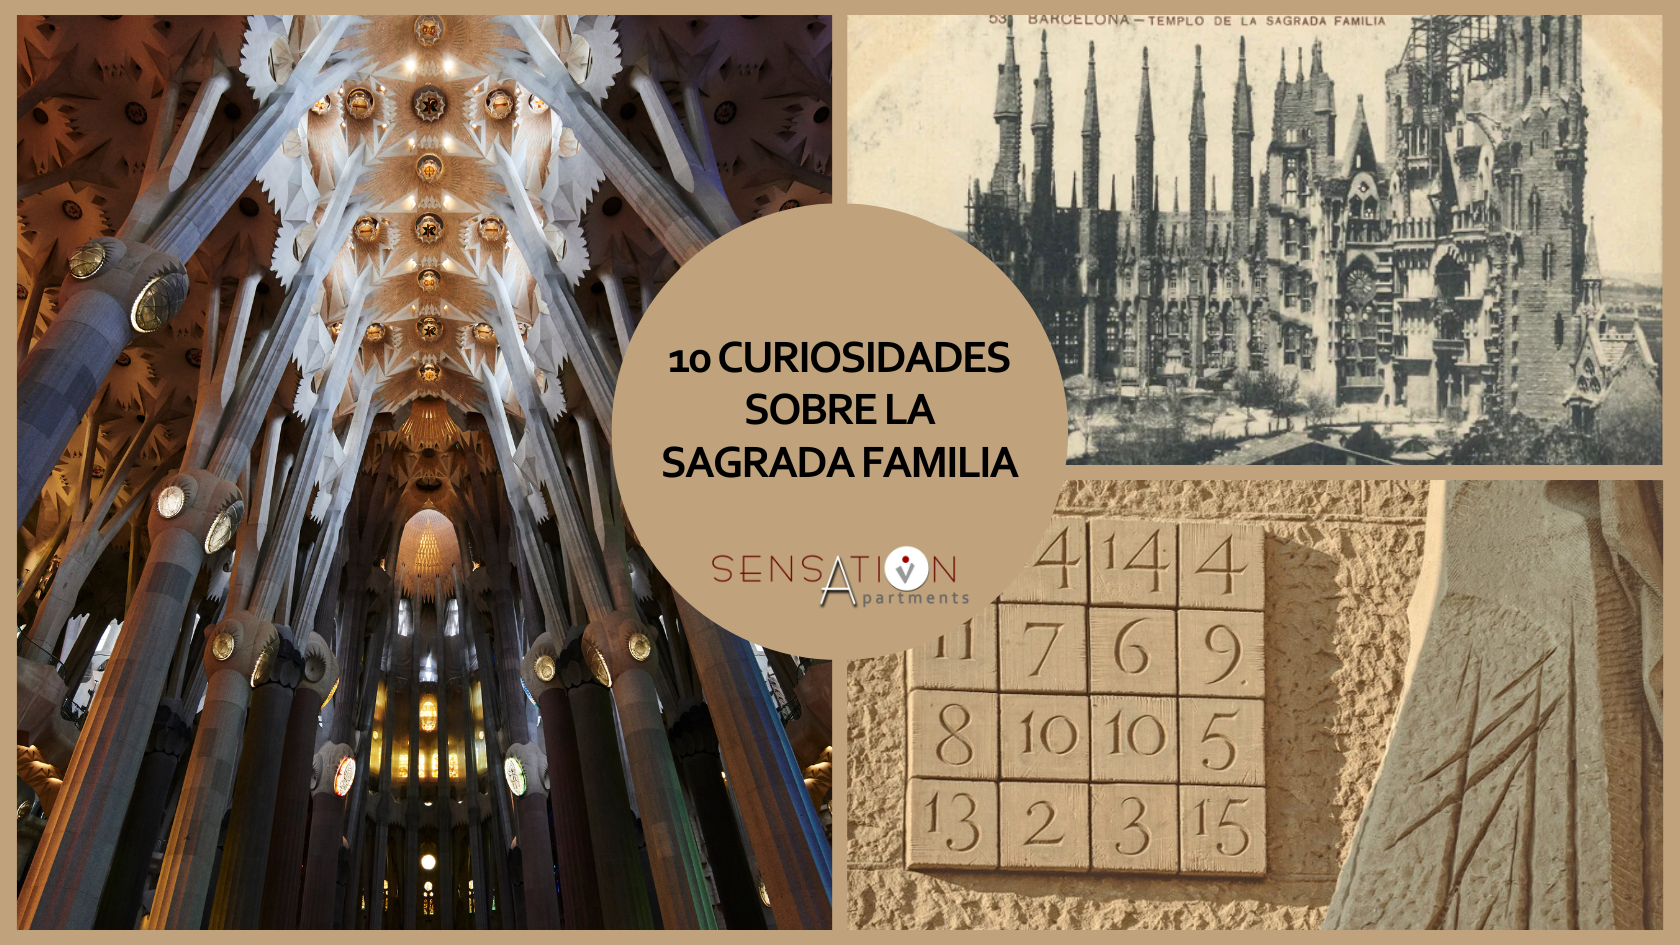 ein Collage aus Bildern mit dem Titel 10 curiosidades sobre la sagrada familia